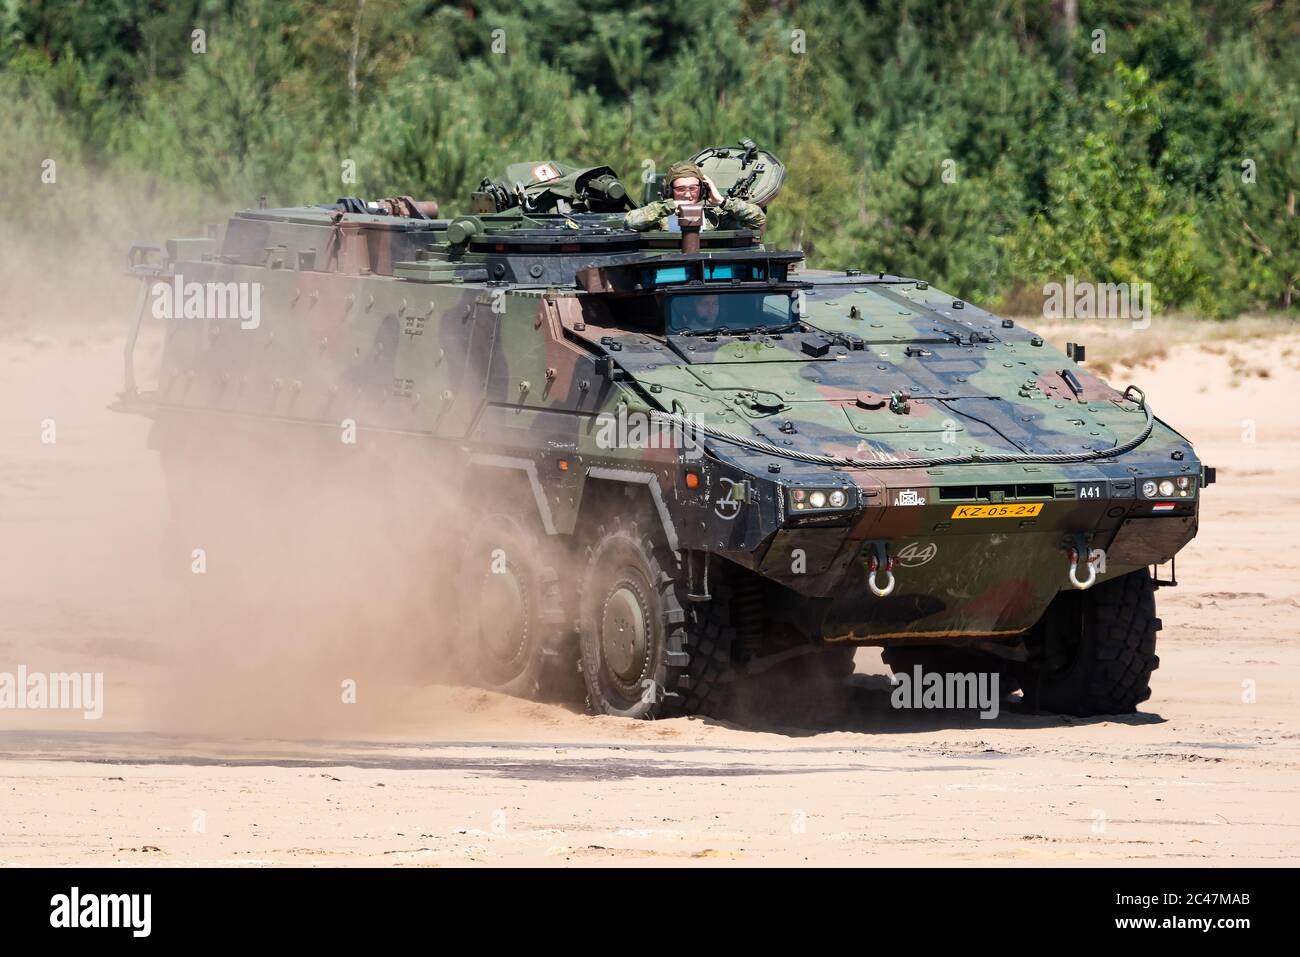 Un Boxer MROV veicolo blindato multirole della Royal Netherlands Army che guida nella sabbia. Foto Stock